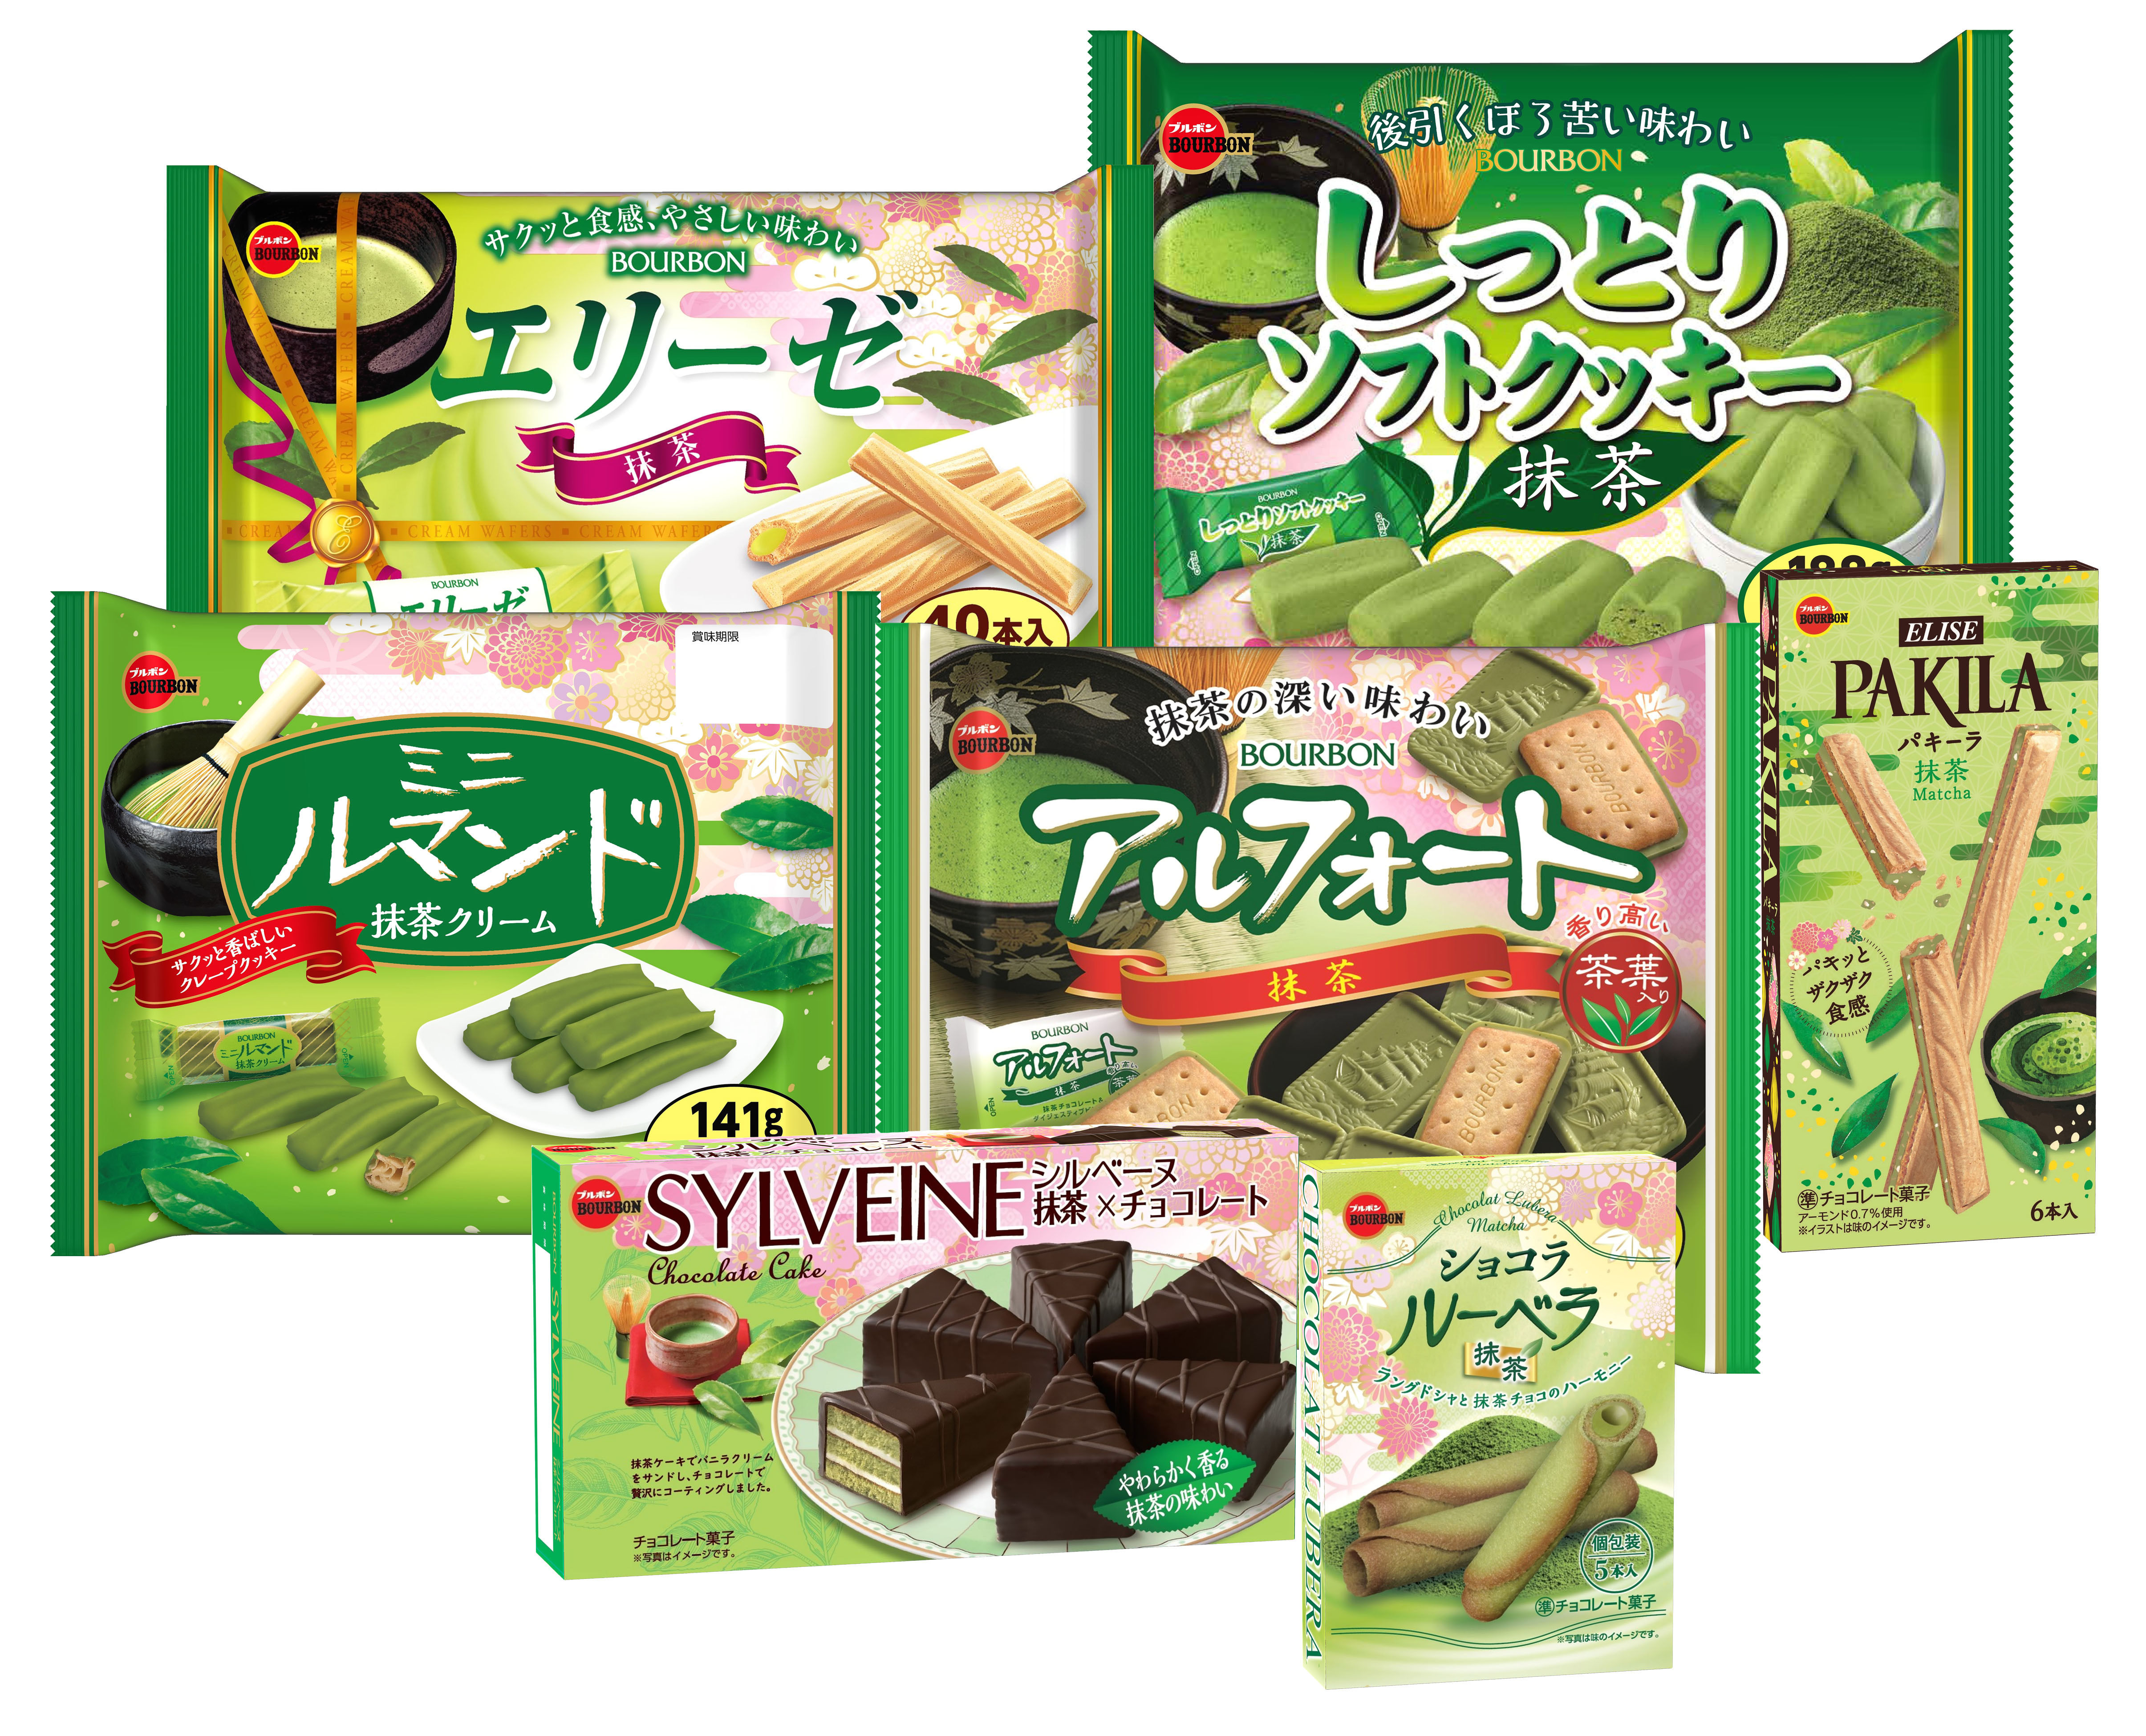 検索精度向上に「レシピ」を活用した
日本初の食品検索APIを提供開始